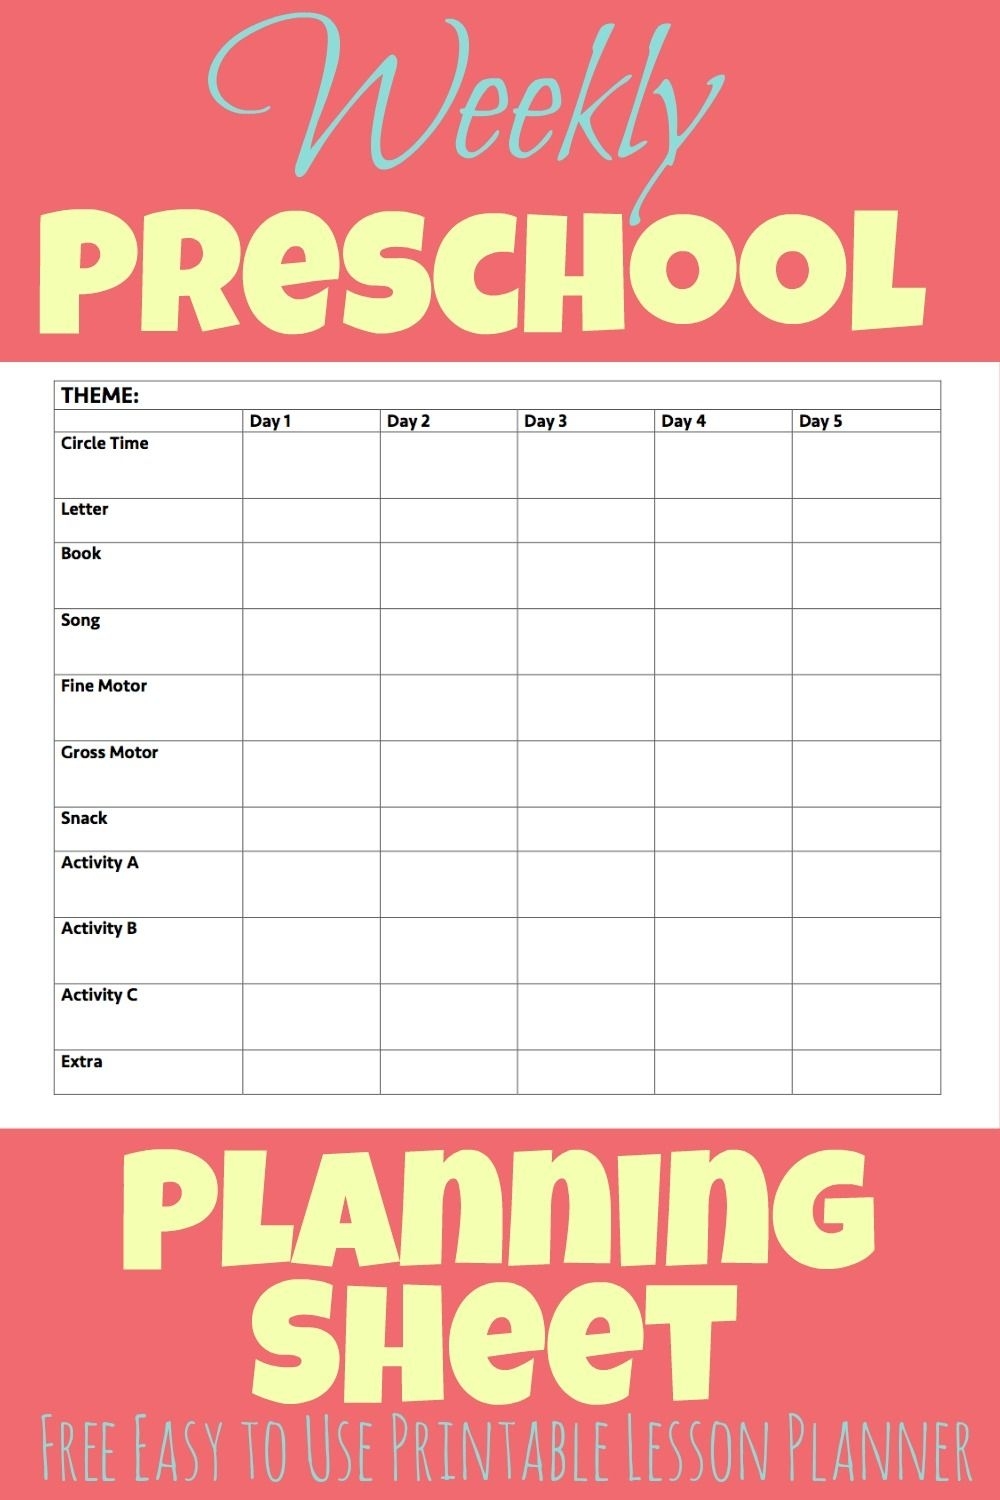 Printable Preschool Week Planning Sheet - More Excellent Me Free Pre K Calendar Template